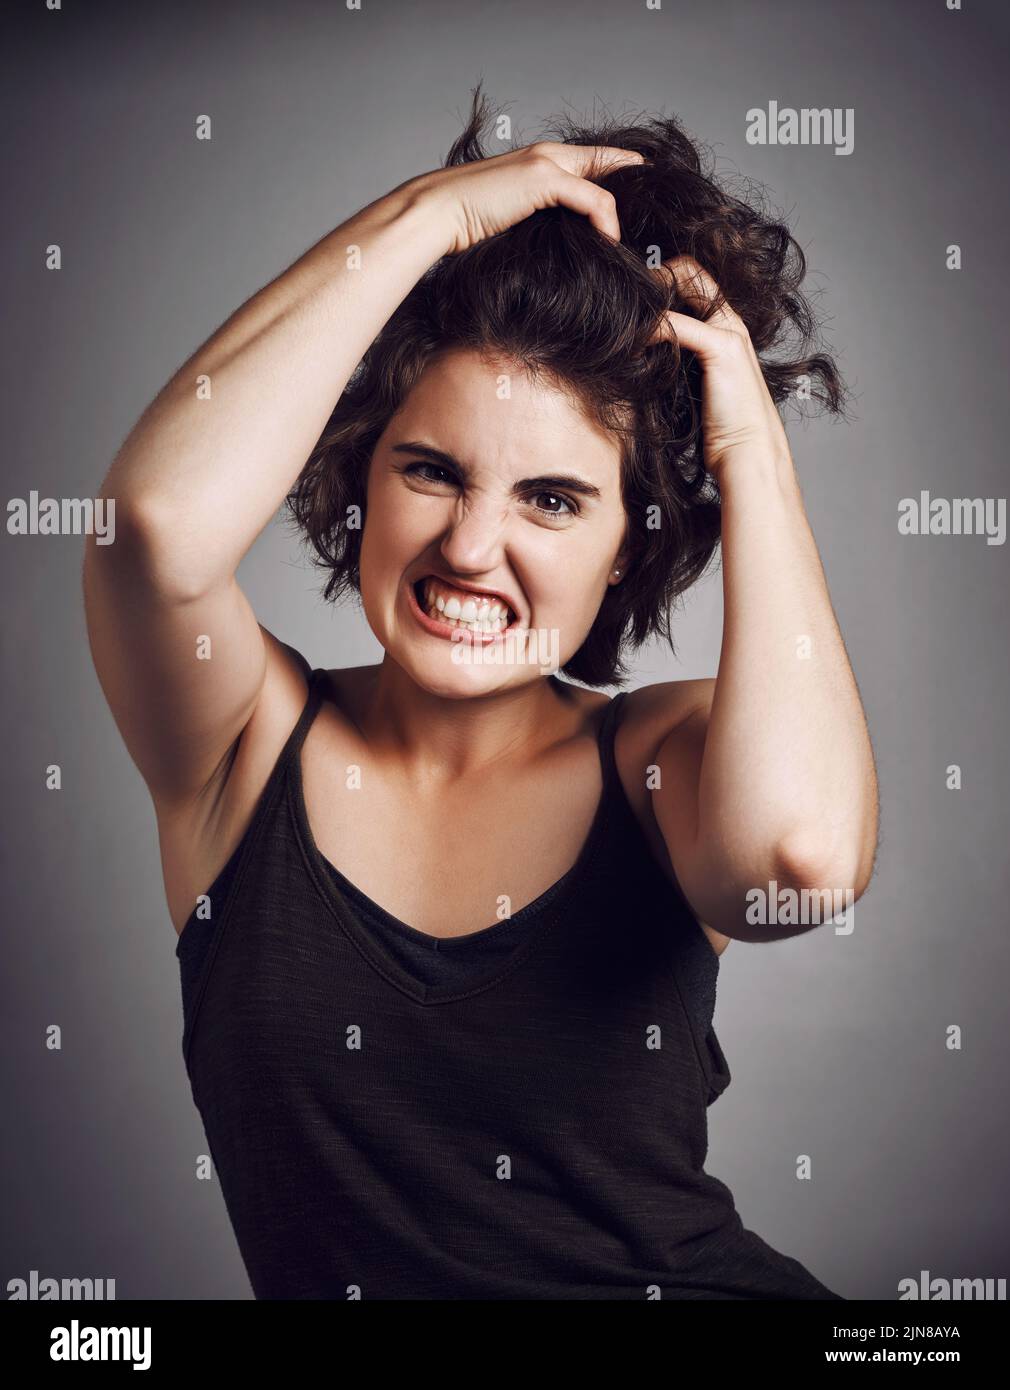 No puedo contener la rabia. Retrato de estudio de una atractiva mujer joven tirando de su pelo con rabia mientras se encuentra contra un fondo gris. Foto de stock